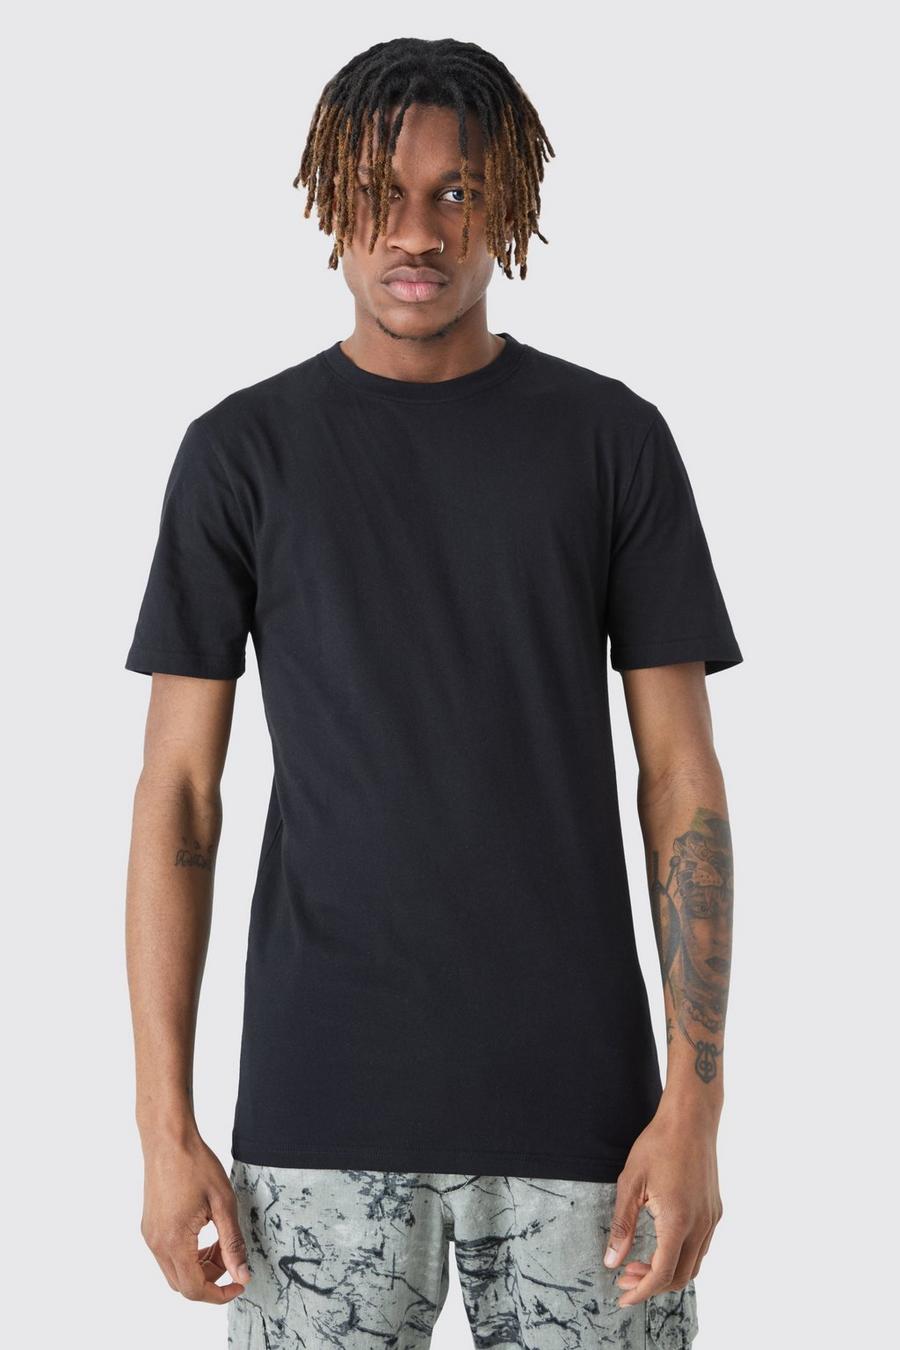 Black Tall Muscle Fit T-Shirts (2 Stuks)